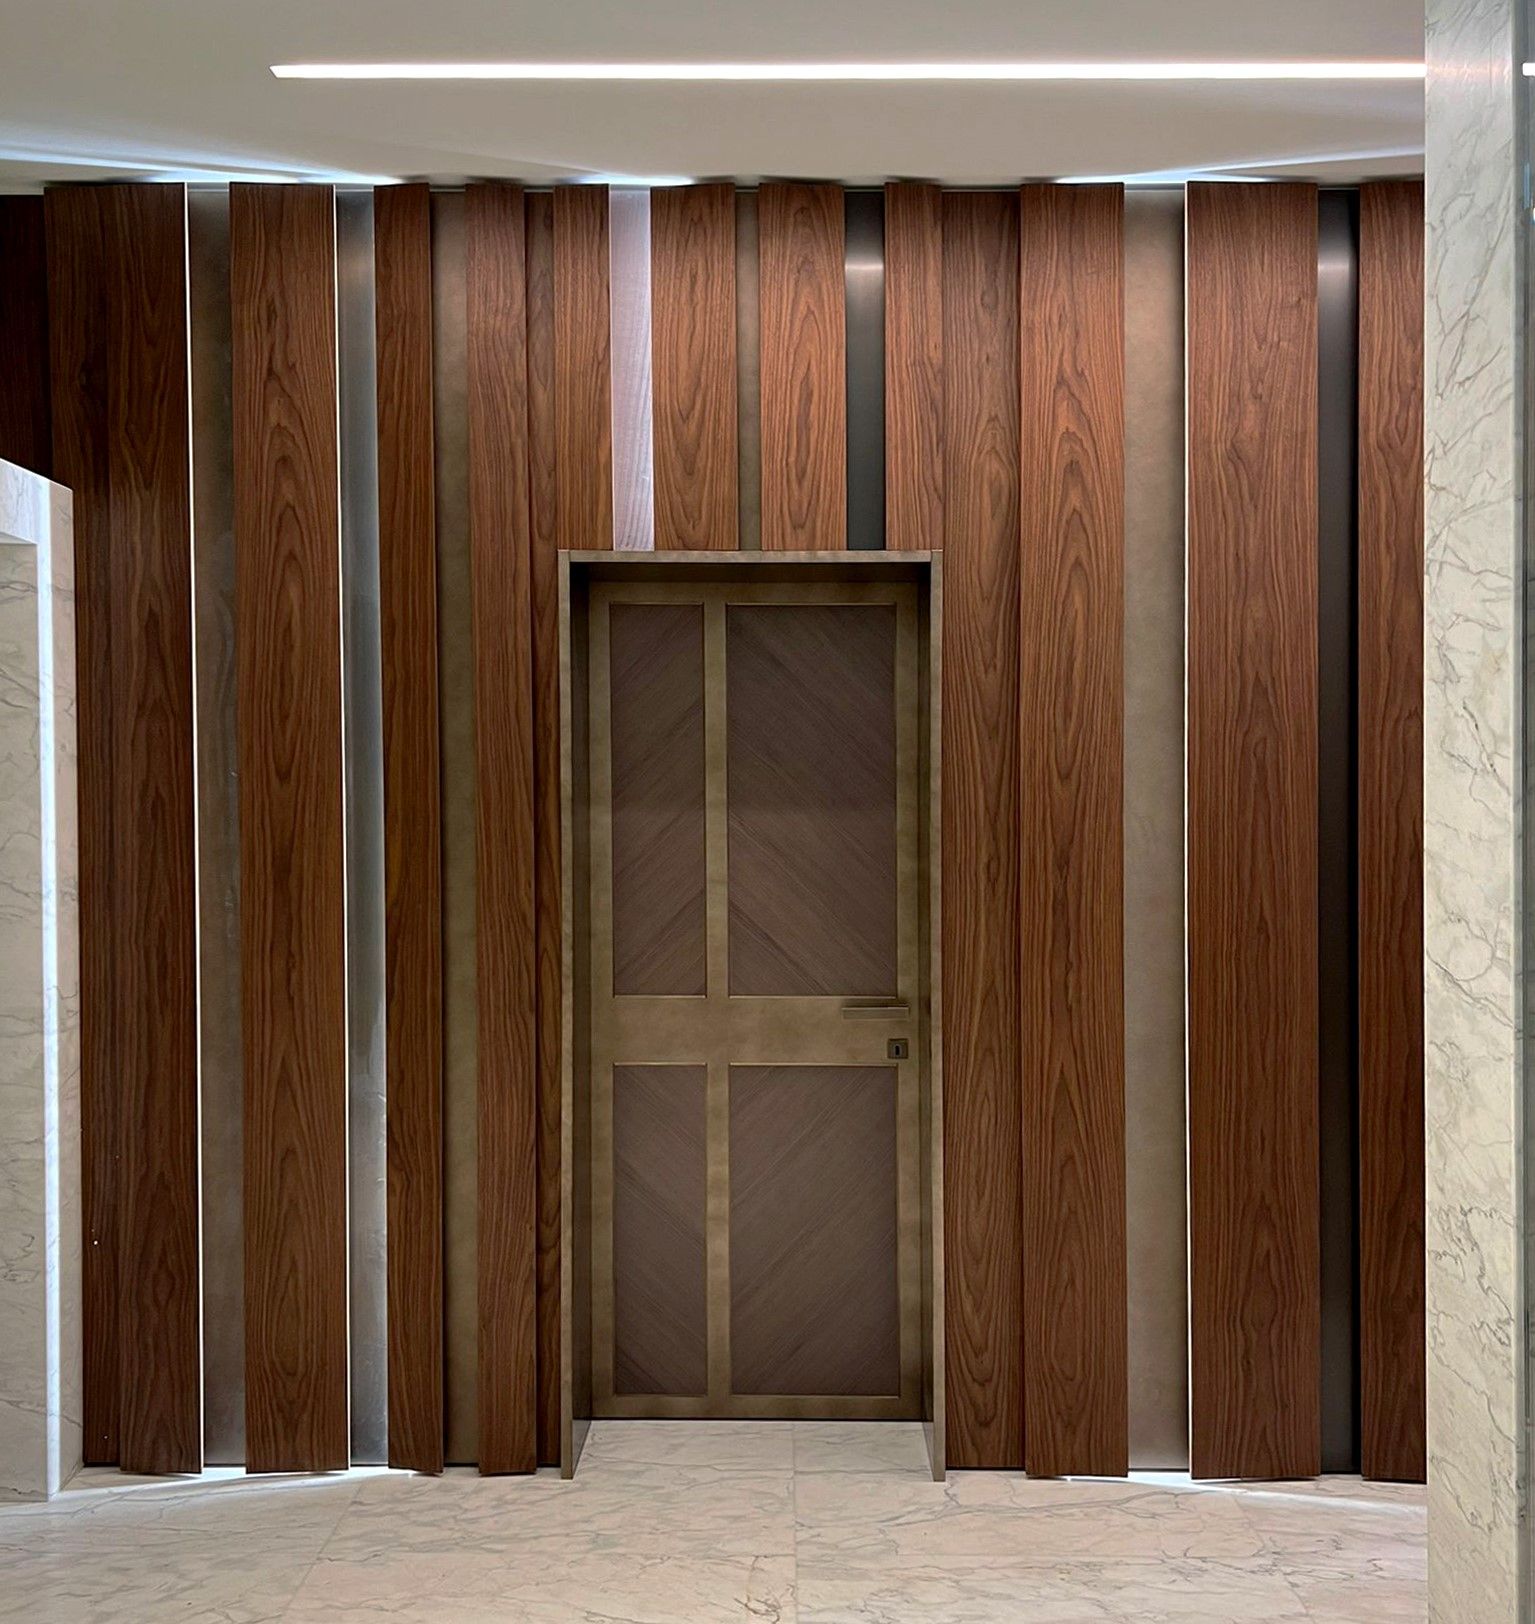 La porta di legno è di arredamento moderno, studiata per un progetto Peverelli